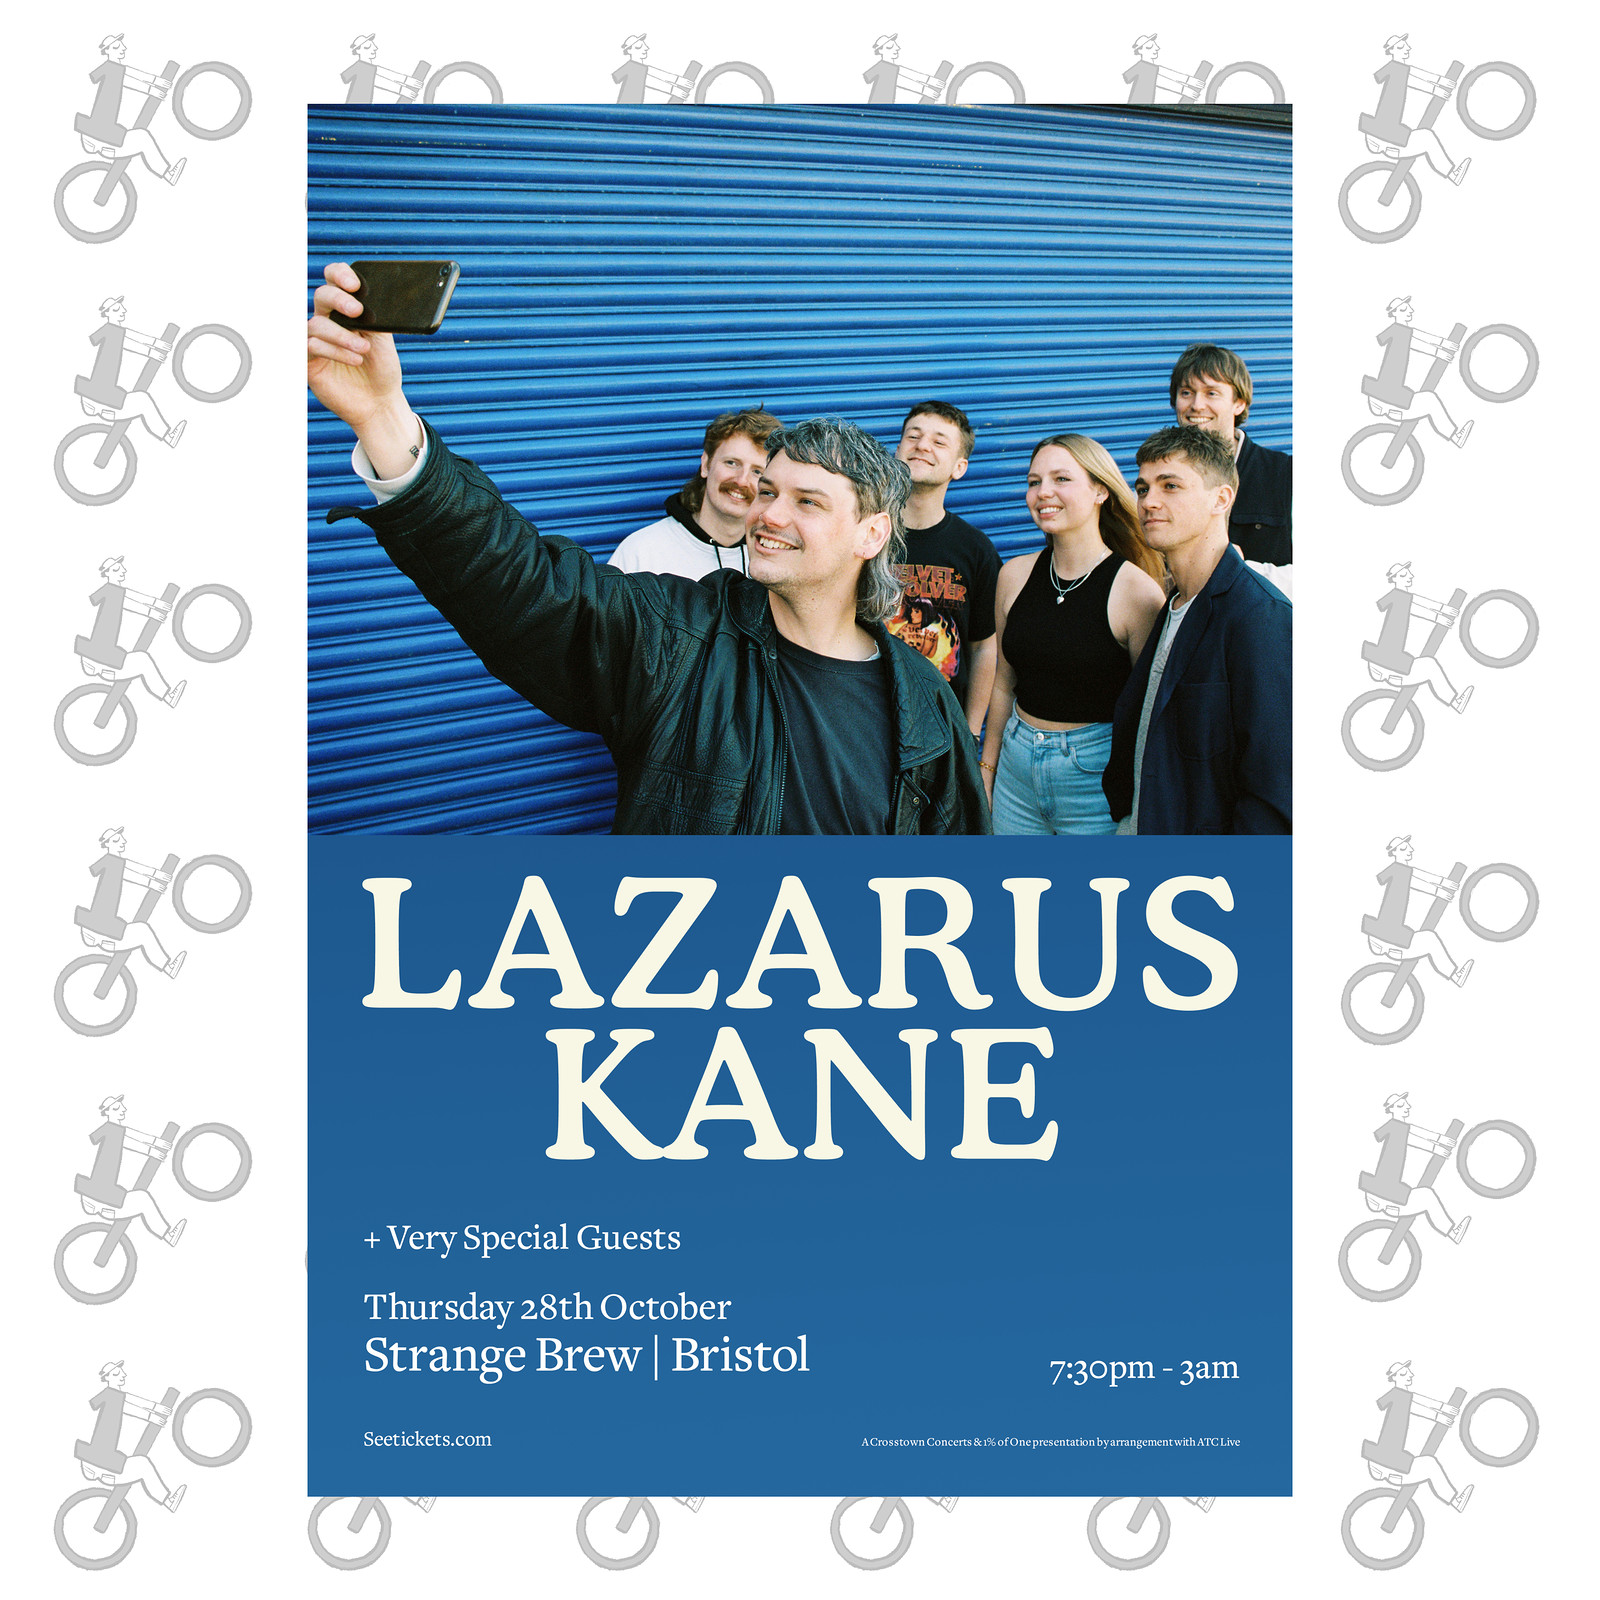 Lazarus Kane at Strange Brew